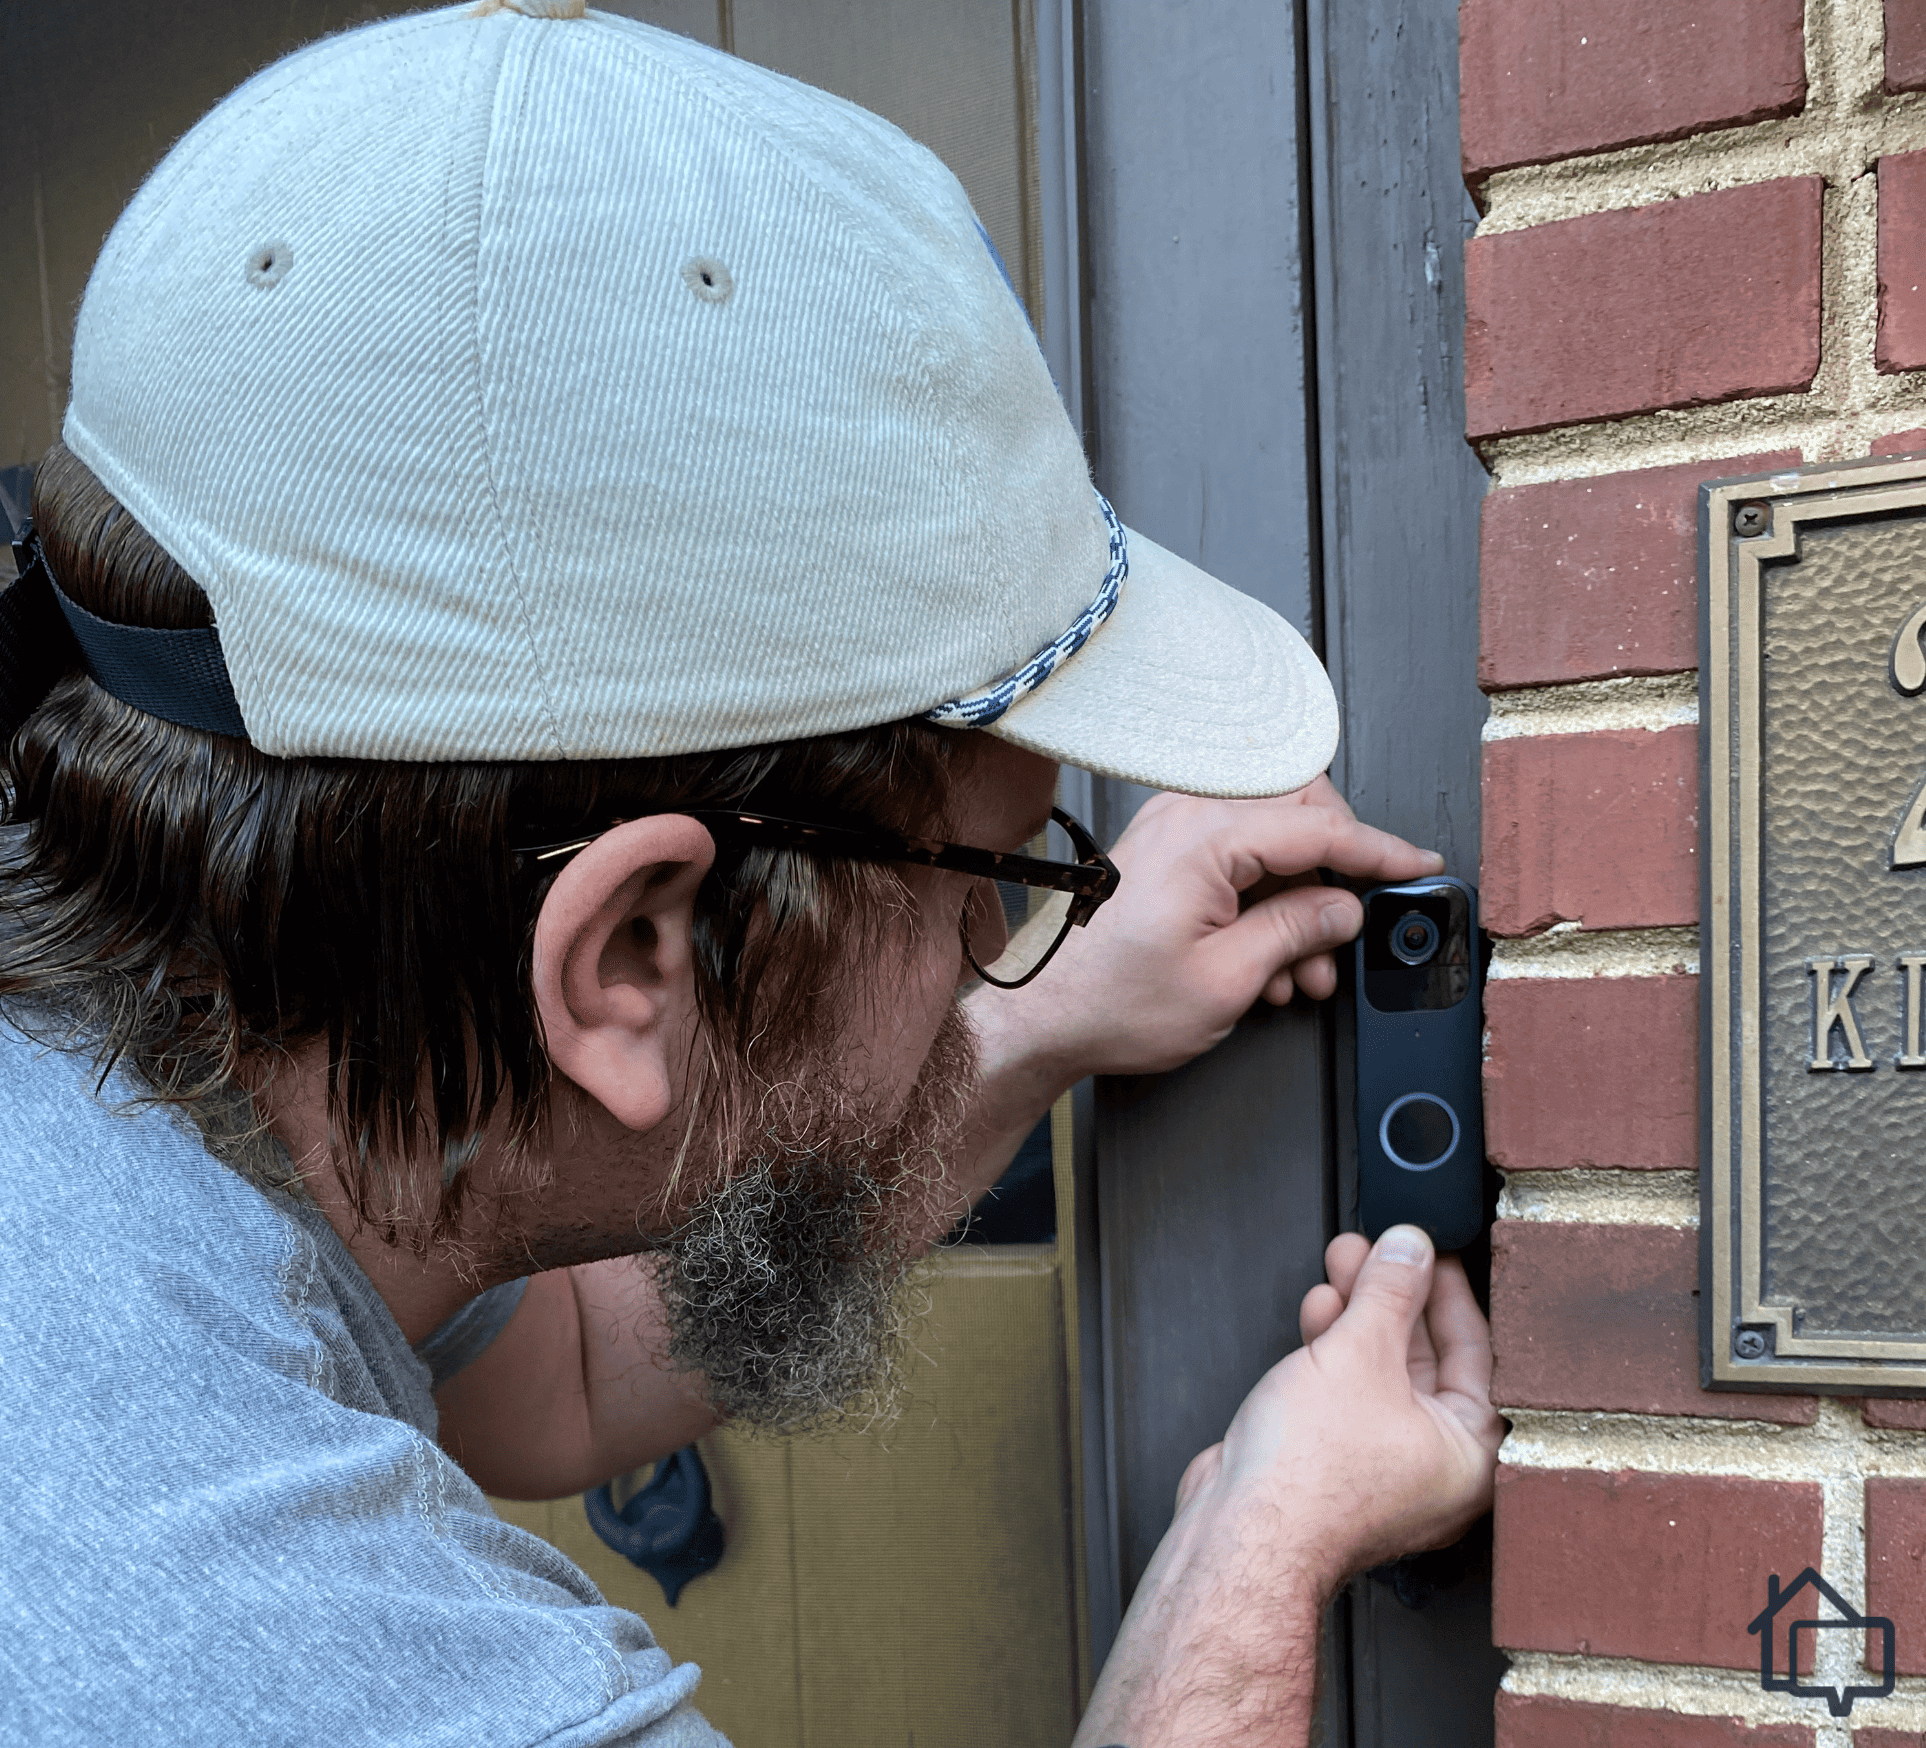 Here I am installing the Blink Video Doorbell on my front door